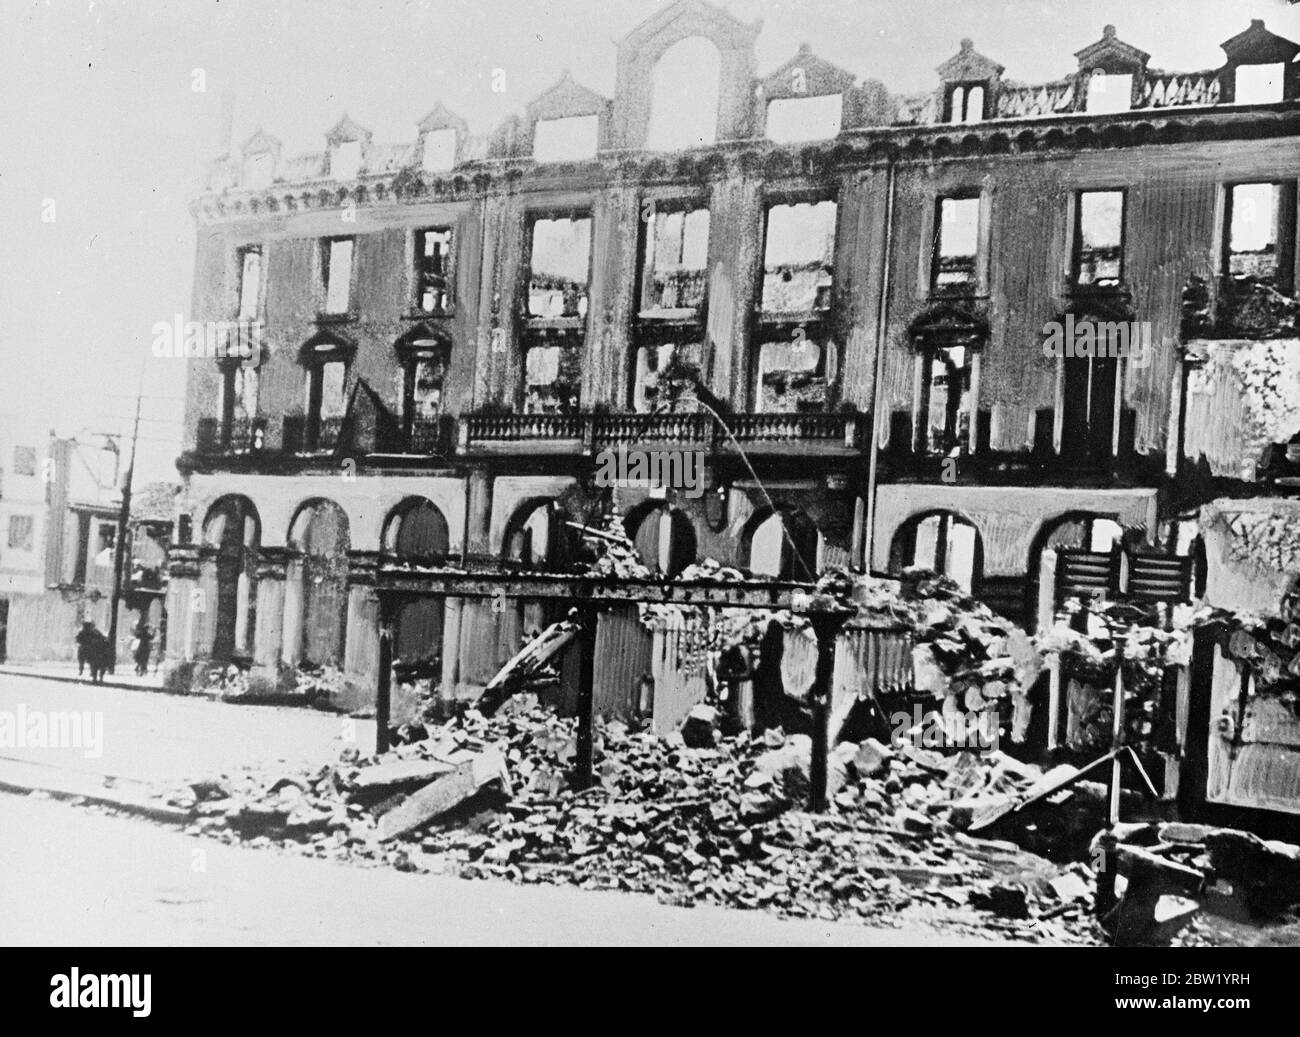 Die Stadt Mungia, nur wenige Kilometer von Bilbao entfernt, ist in Trümmern, nachdem die Rebellen in ihrem schnellen Vormarsch nach Bilbao, Baskenland, die heftigen Luftangriffe und Artilleriebeschuss durchgeführt hatten. 18 Juni 1937 Stockfoto